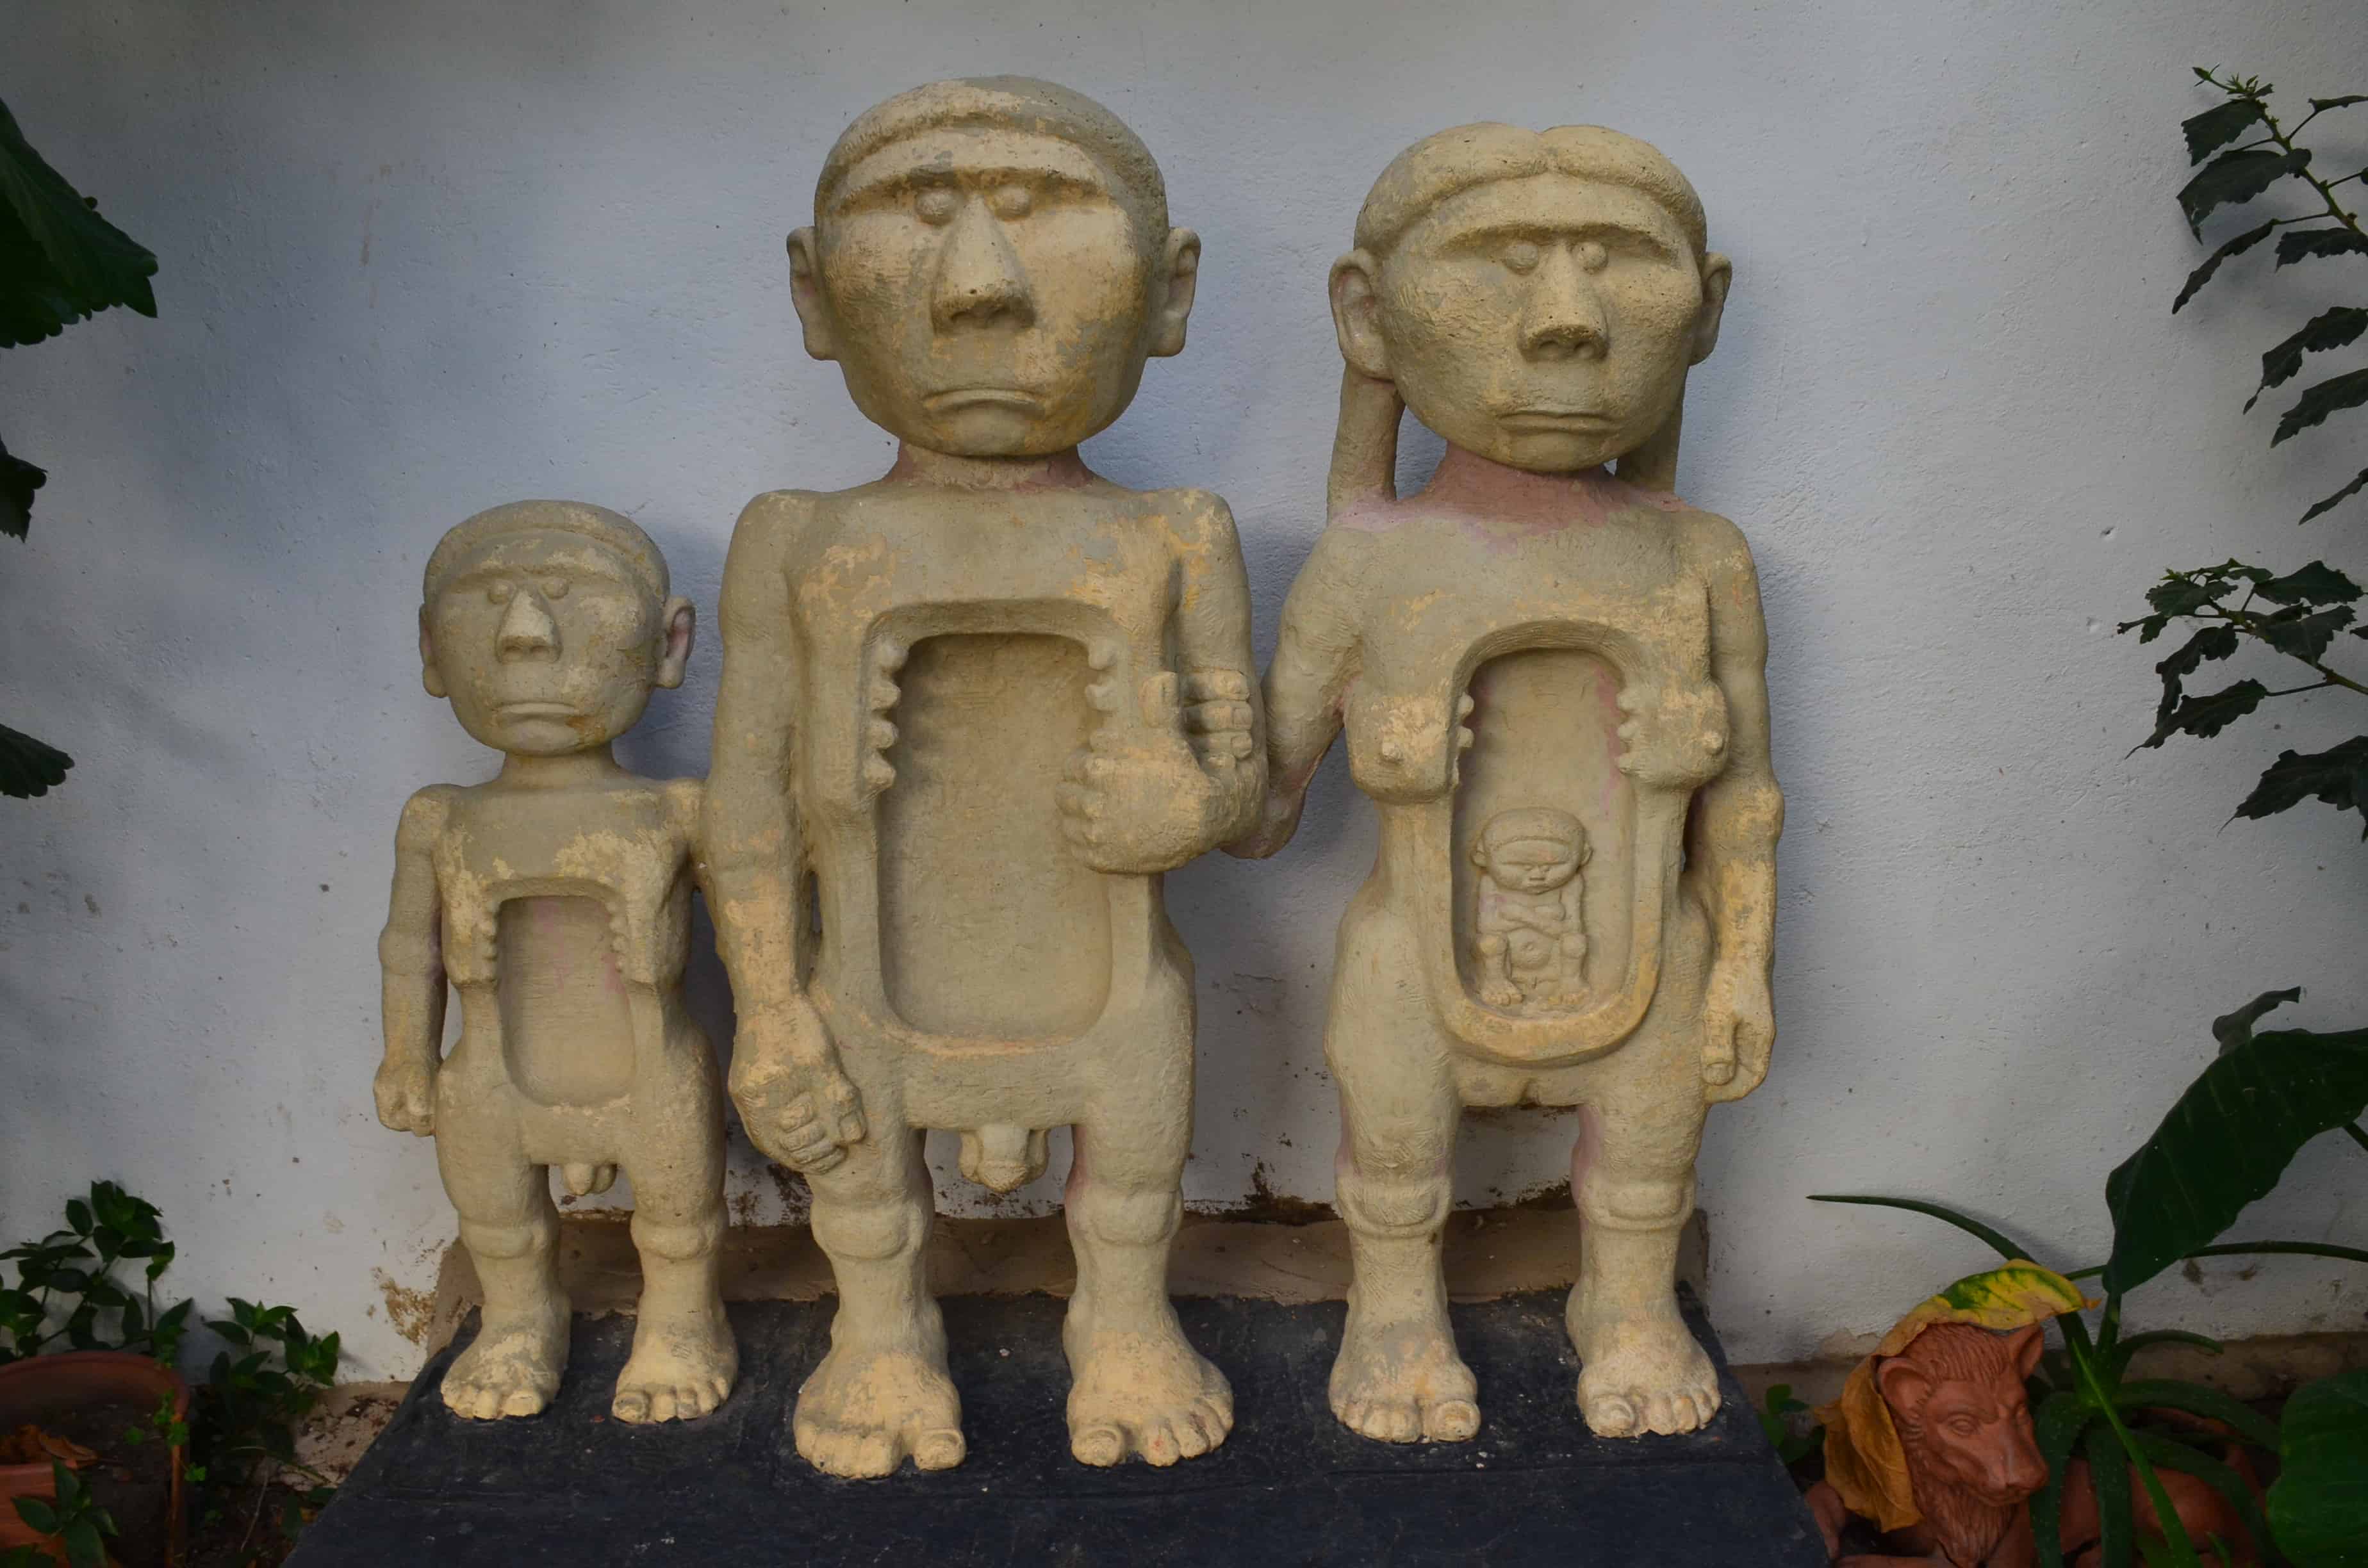 Muisca sculpture at Casa Museo Luis Alberto Acuña in Villa de Leyva, Boyacá, Colombia